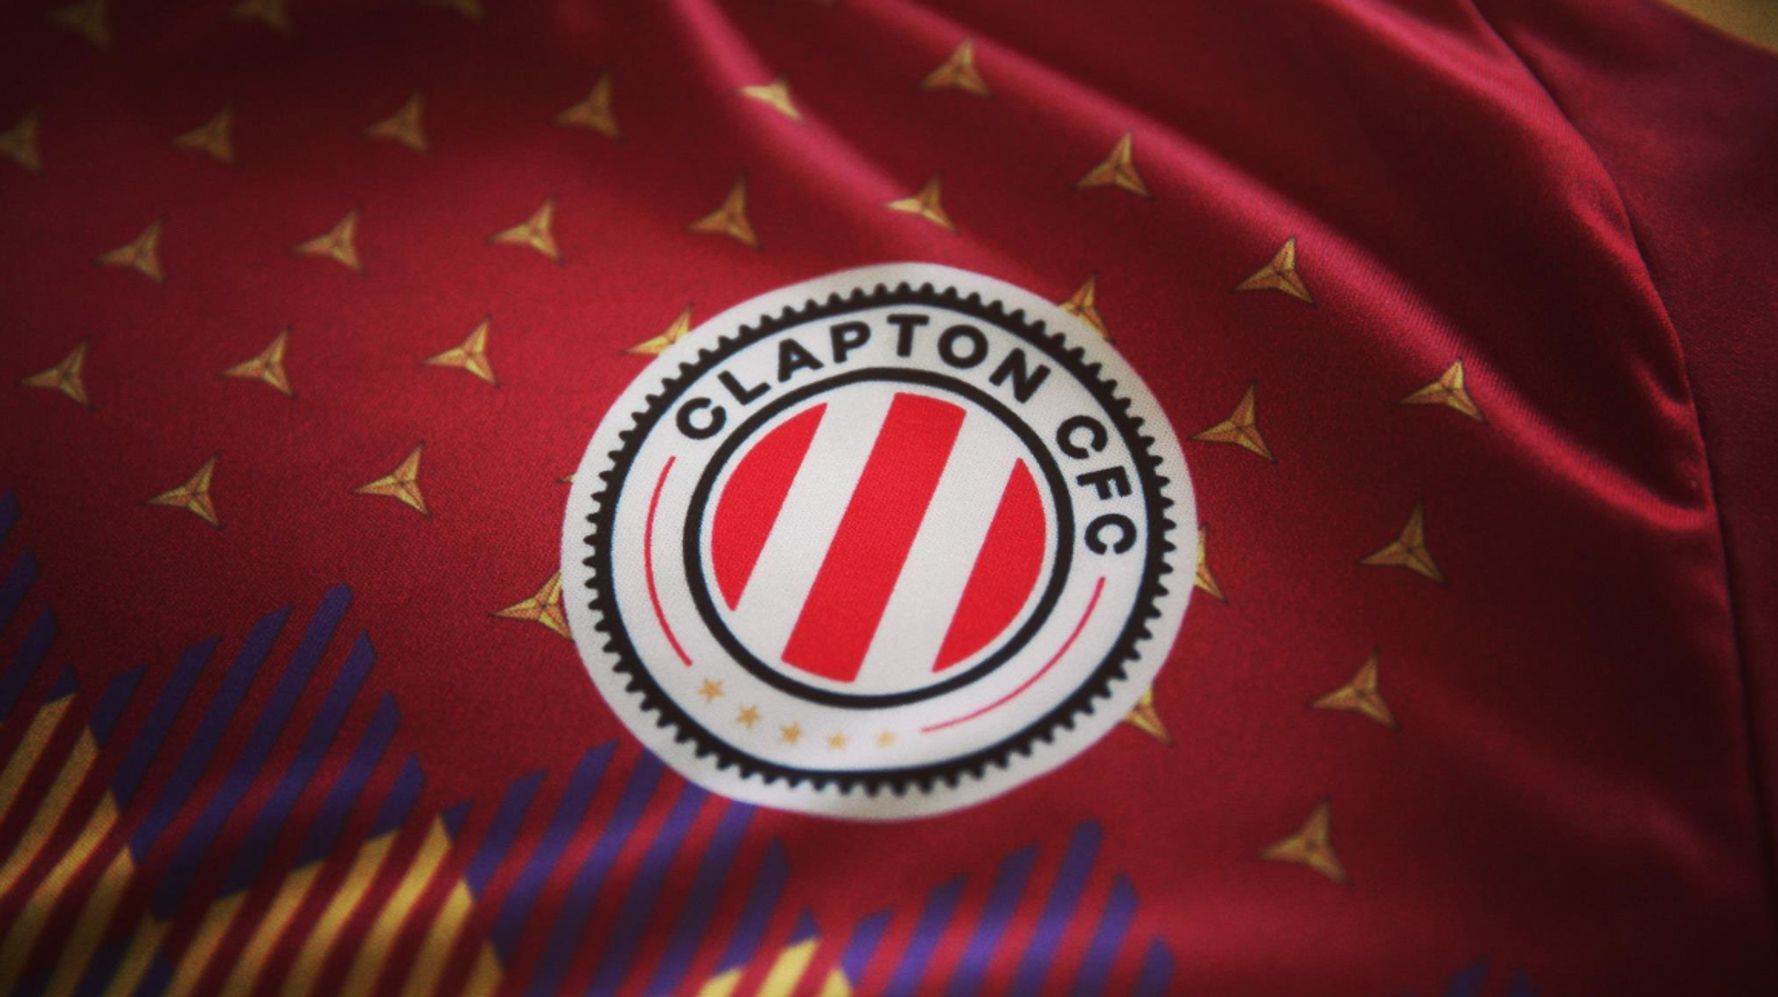 Clapton, equipo de inglés que juega con una camiseta homenaje a la República española | El HuffPost Noticias